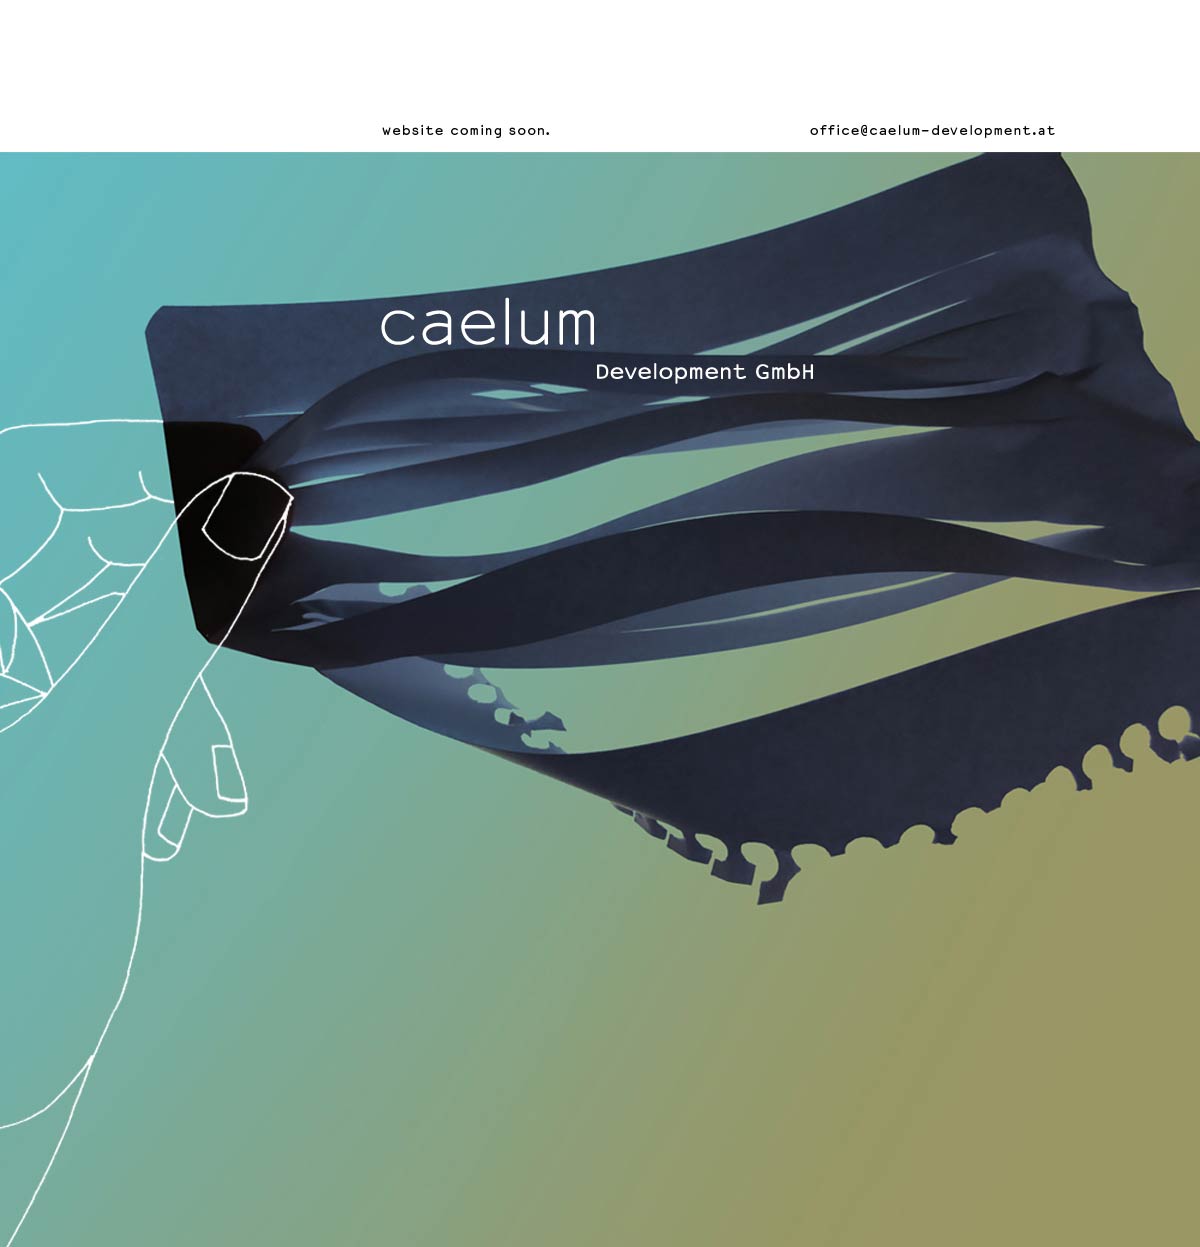 caelum Development GmbH